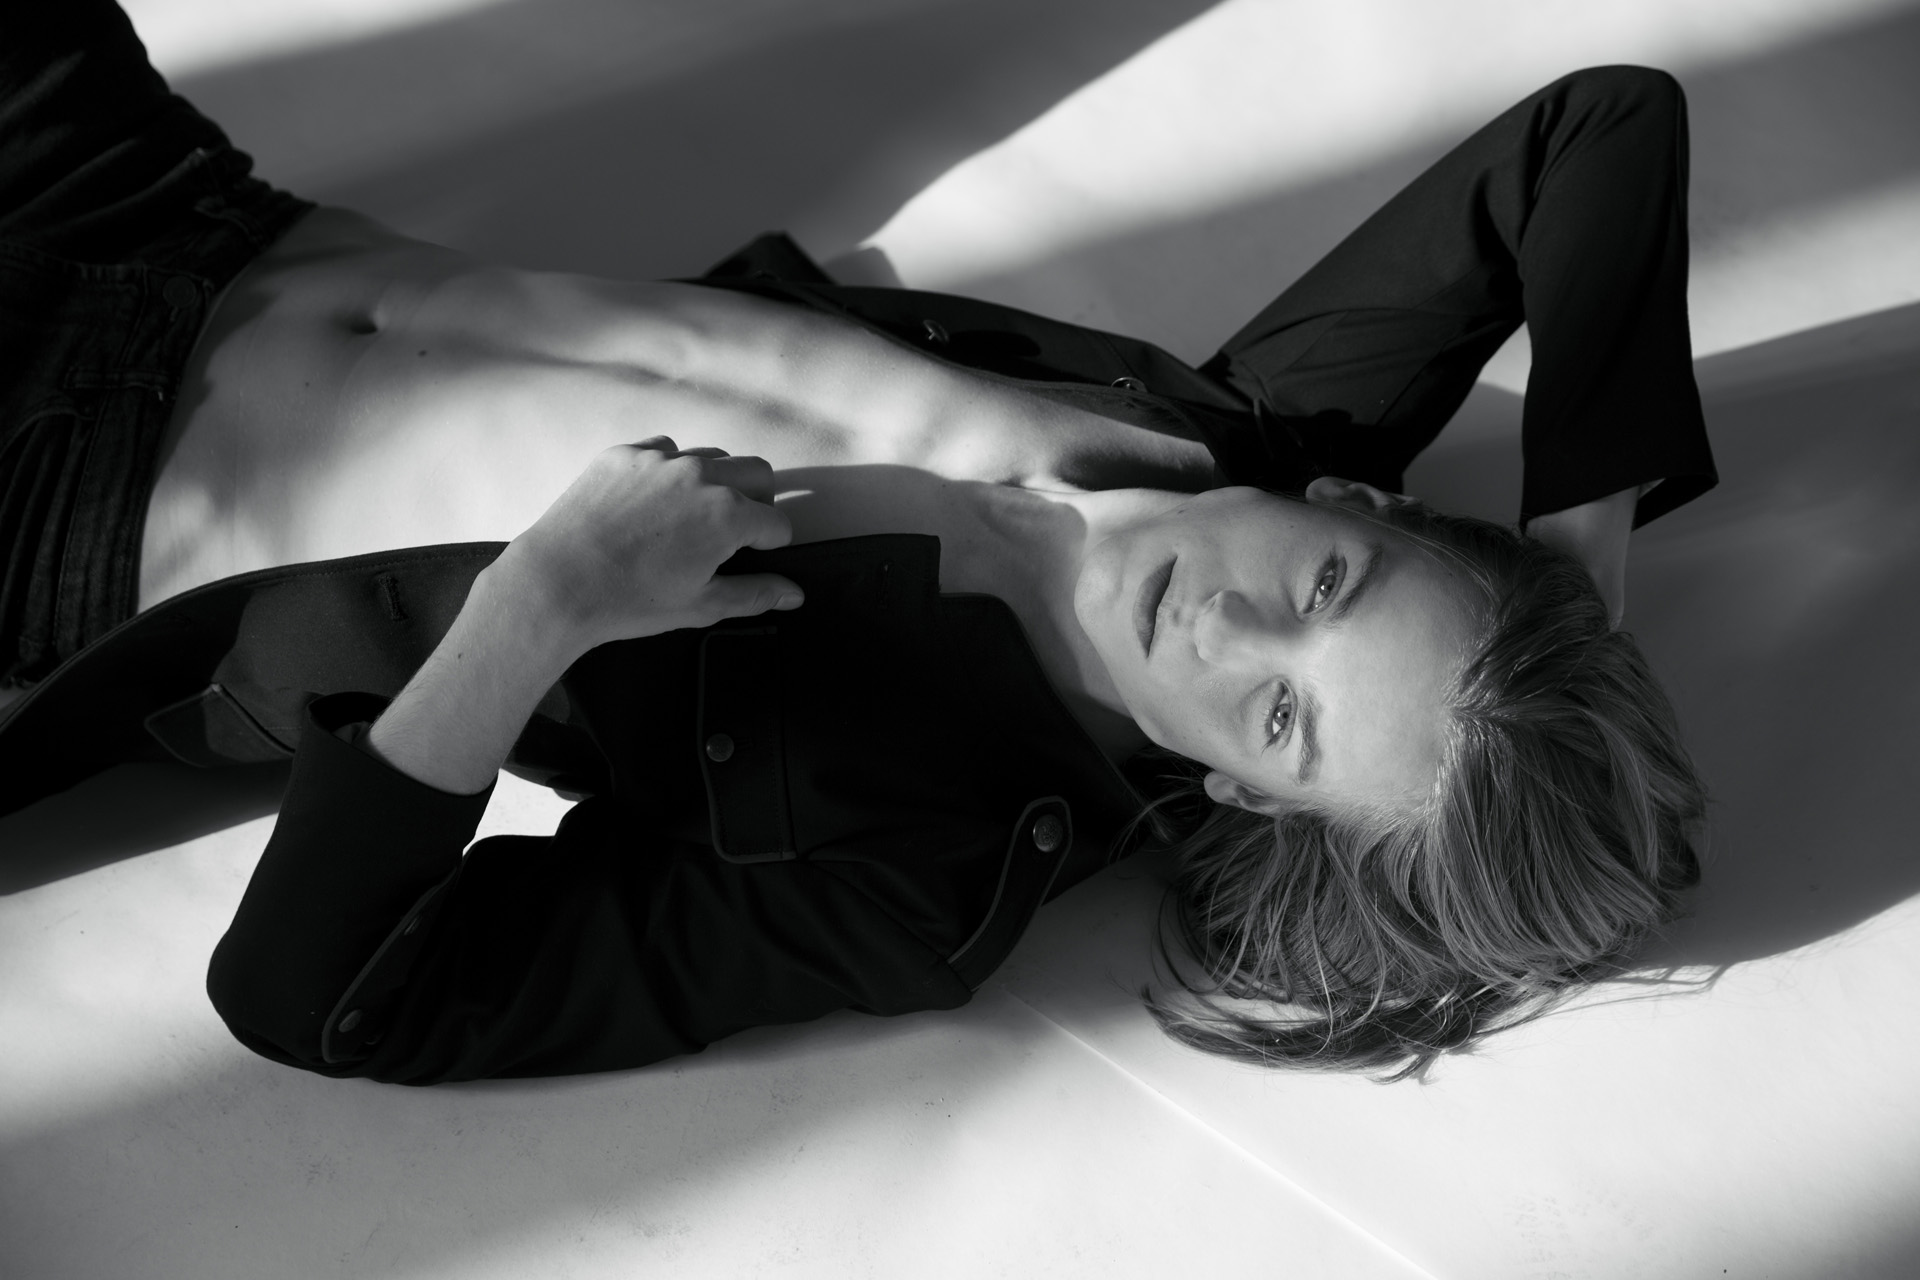 Emil Andersson / Elite Models Milan